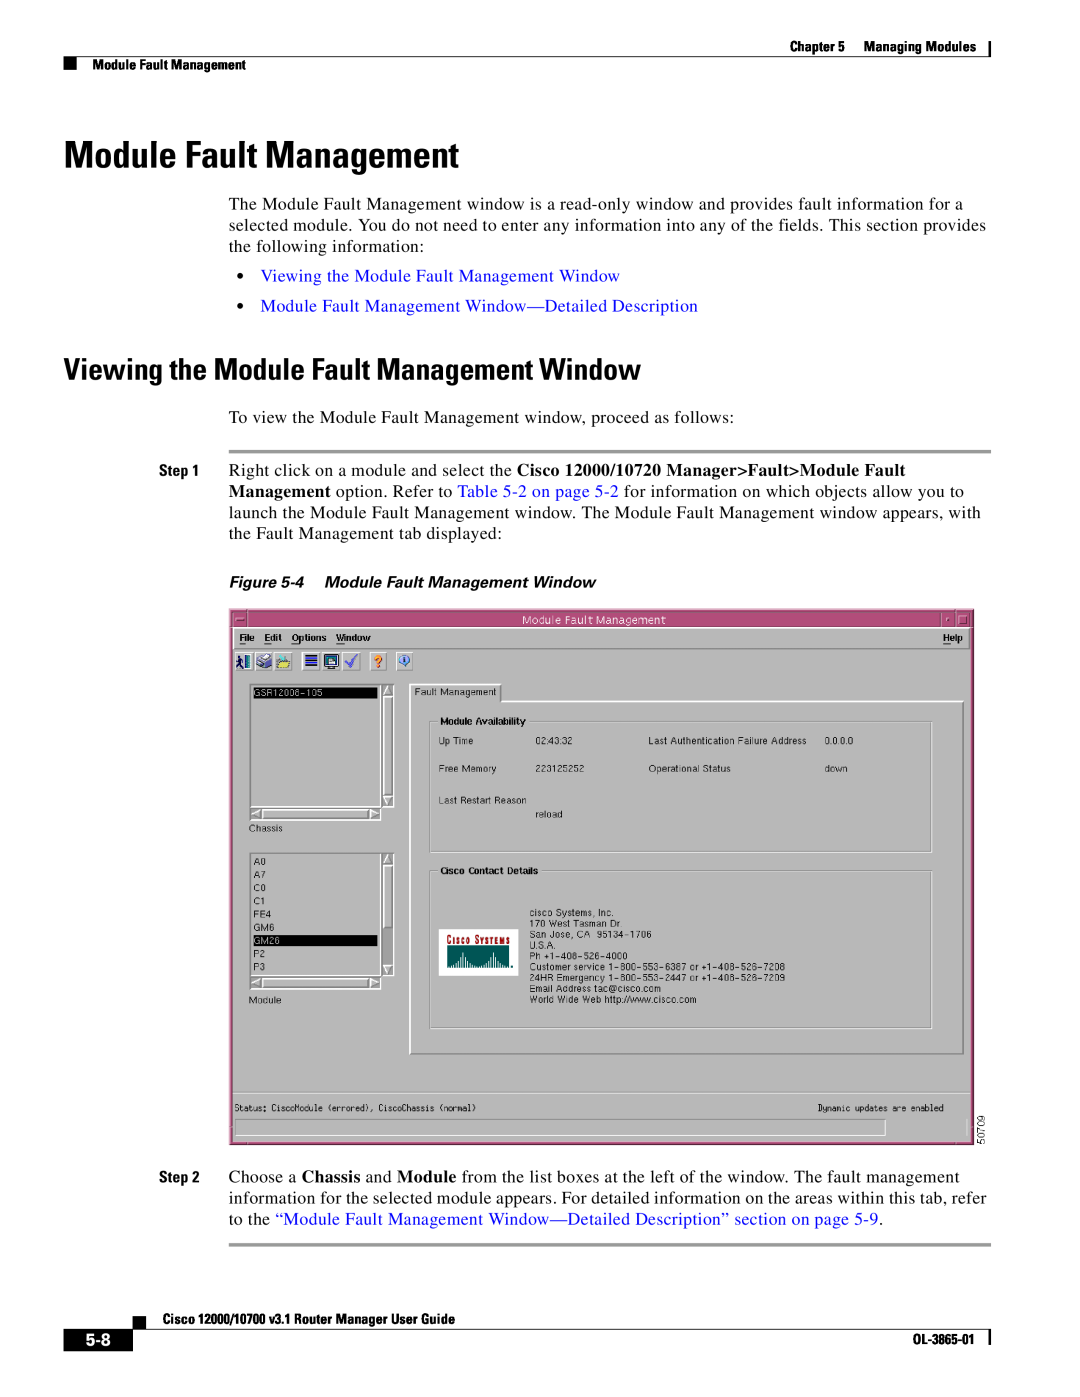 Cisco Systems 10700 Viewing the Module Fault Management Window, Module Fault Management Window-Detailed Description 